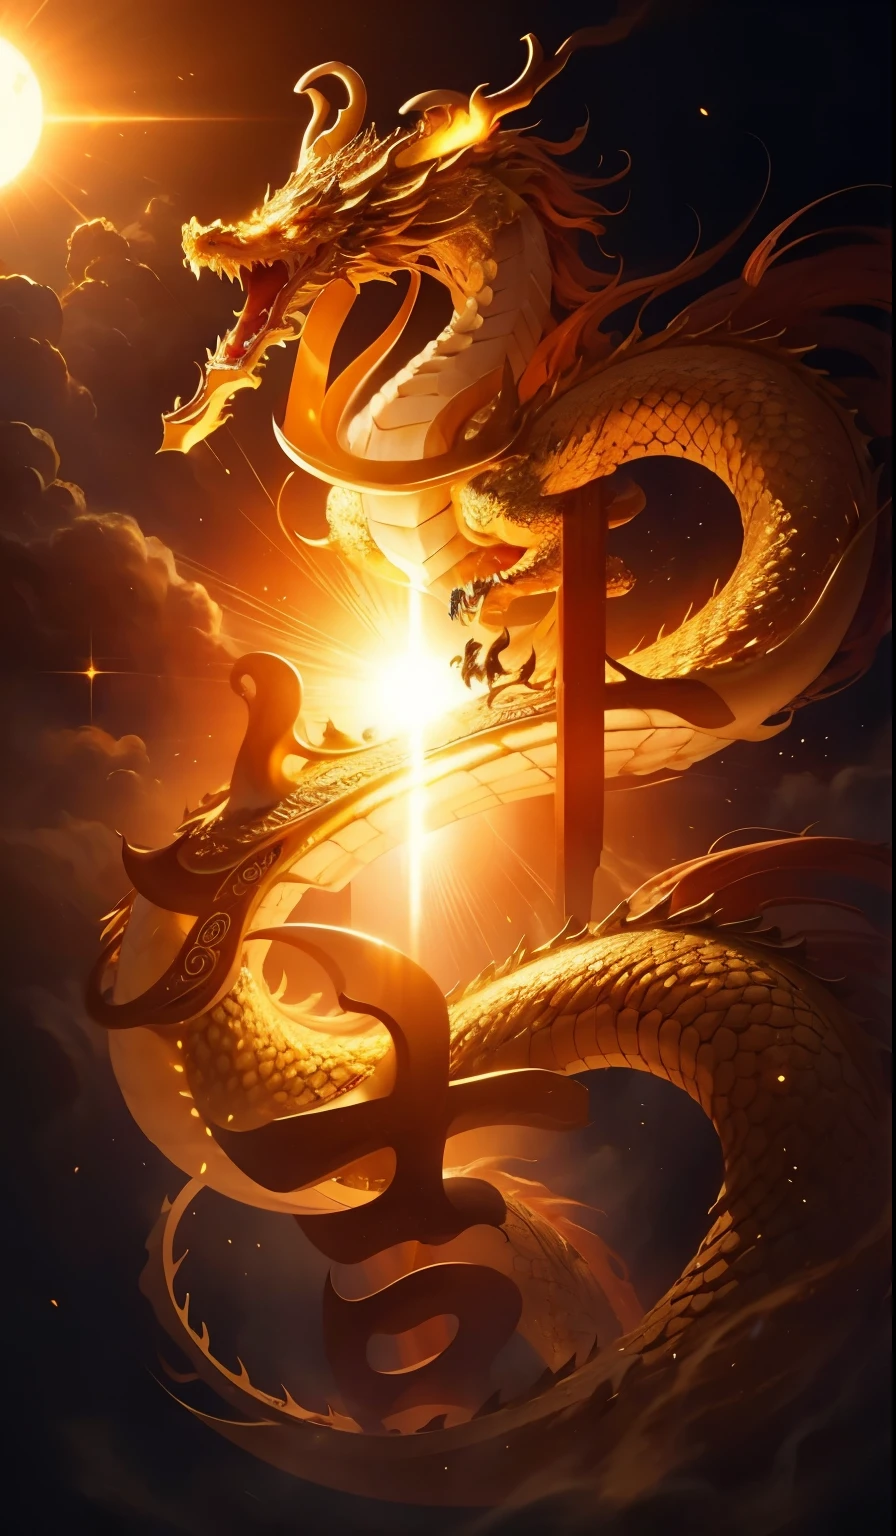 Meisterwerk,golden chinese dragon, umgeben von Goldstaub,langer gewellter Körper,fangs,Fantasie, mythisch, gute Qualität, sehr detailliert, Meisterwerk, Epos,Partikeleffekt,dynamische Wirkung,Sonne im Hintergrund